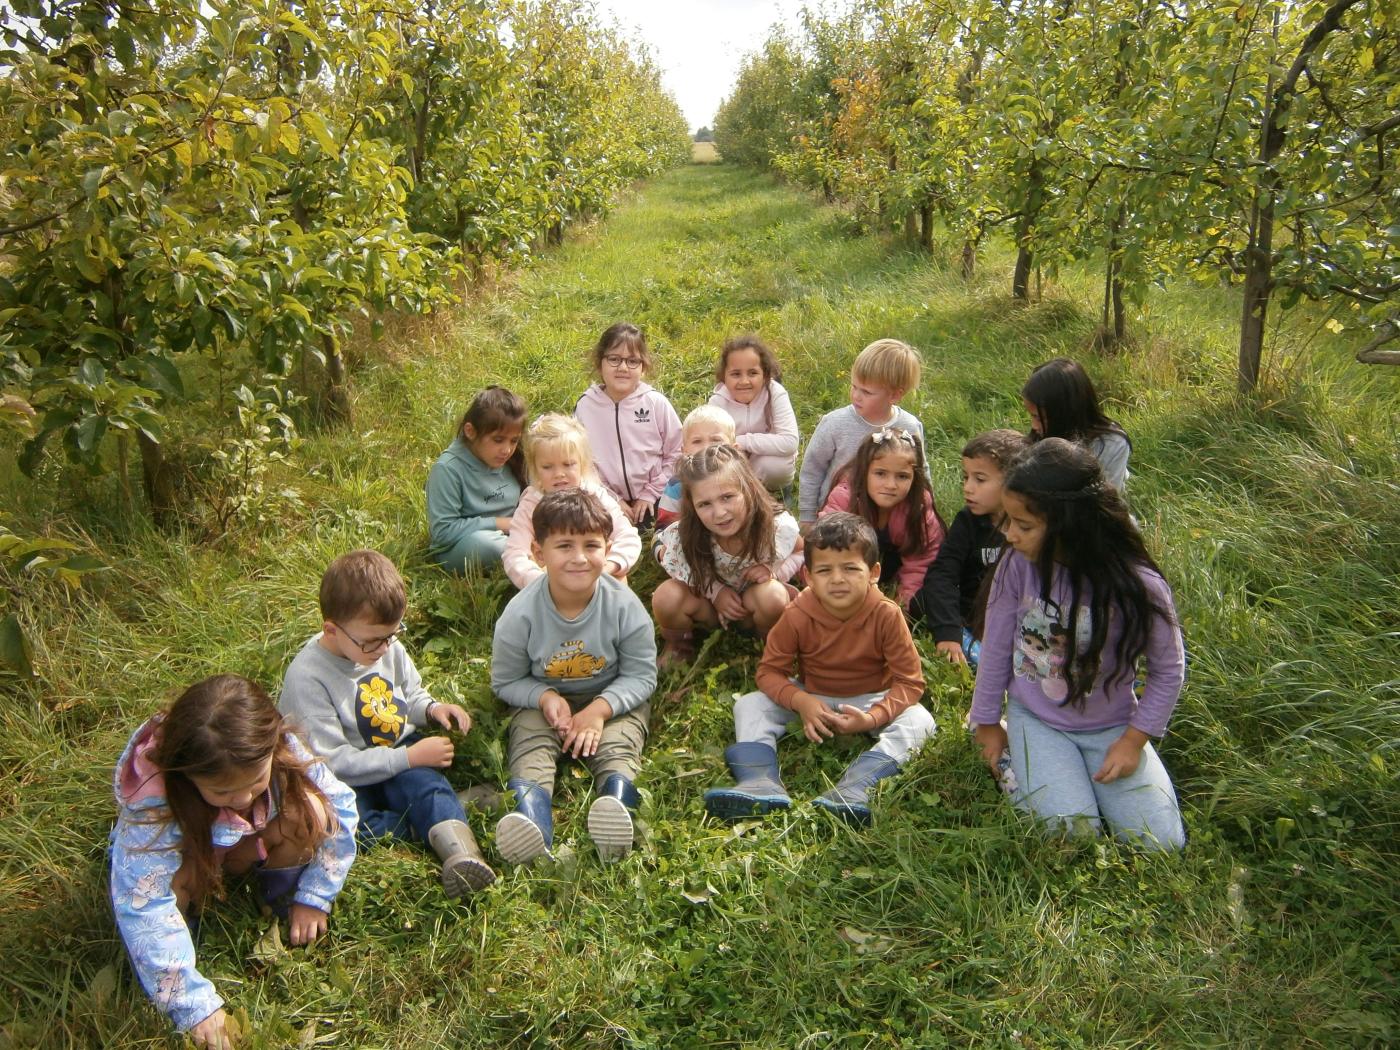 klasfoto in appelboomgaard